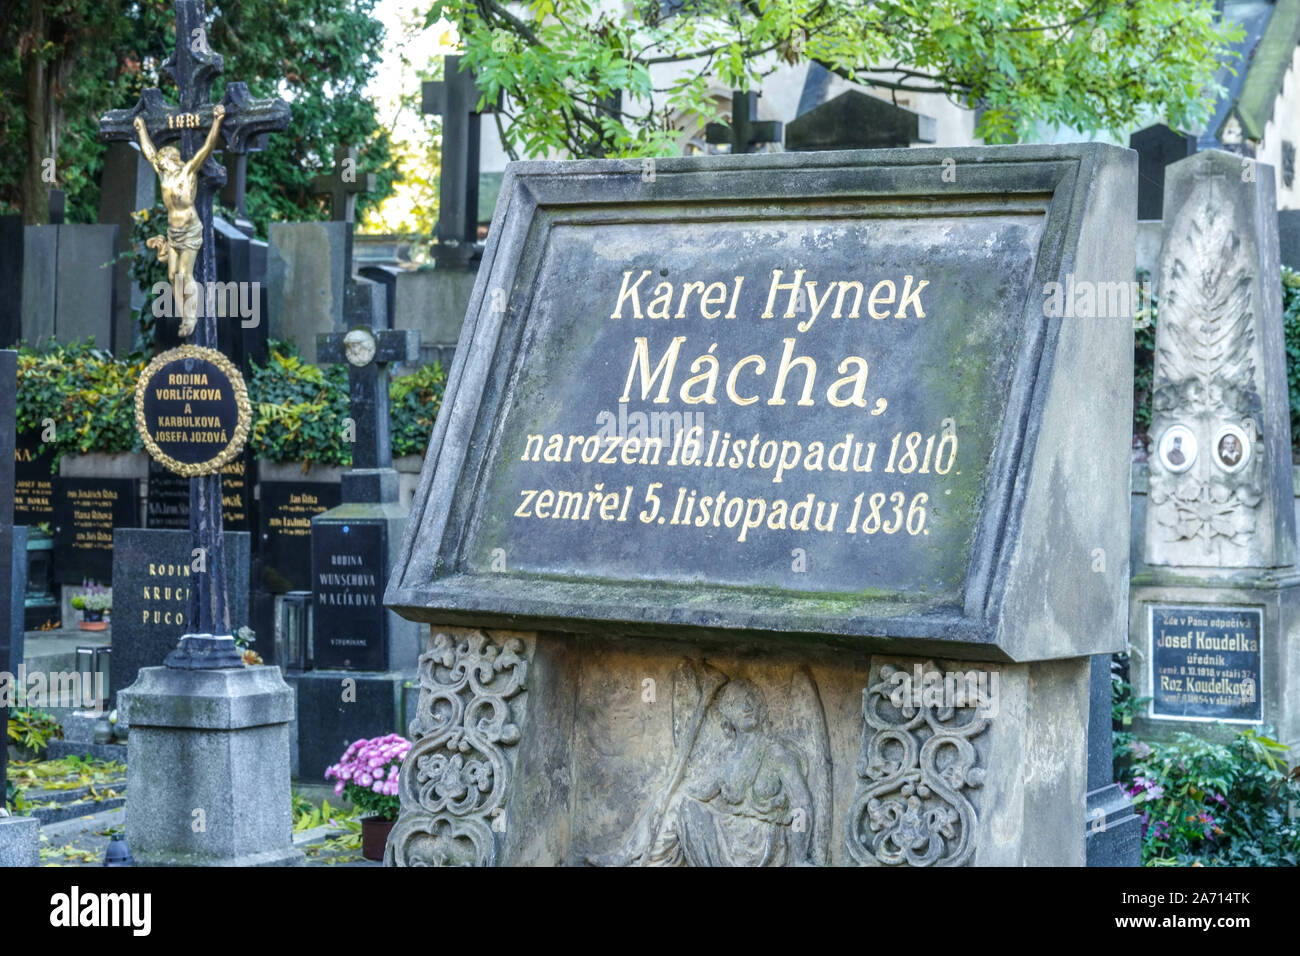 Karel Hynek Macha grave Vysehrad cemetery Stock Photo